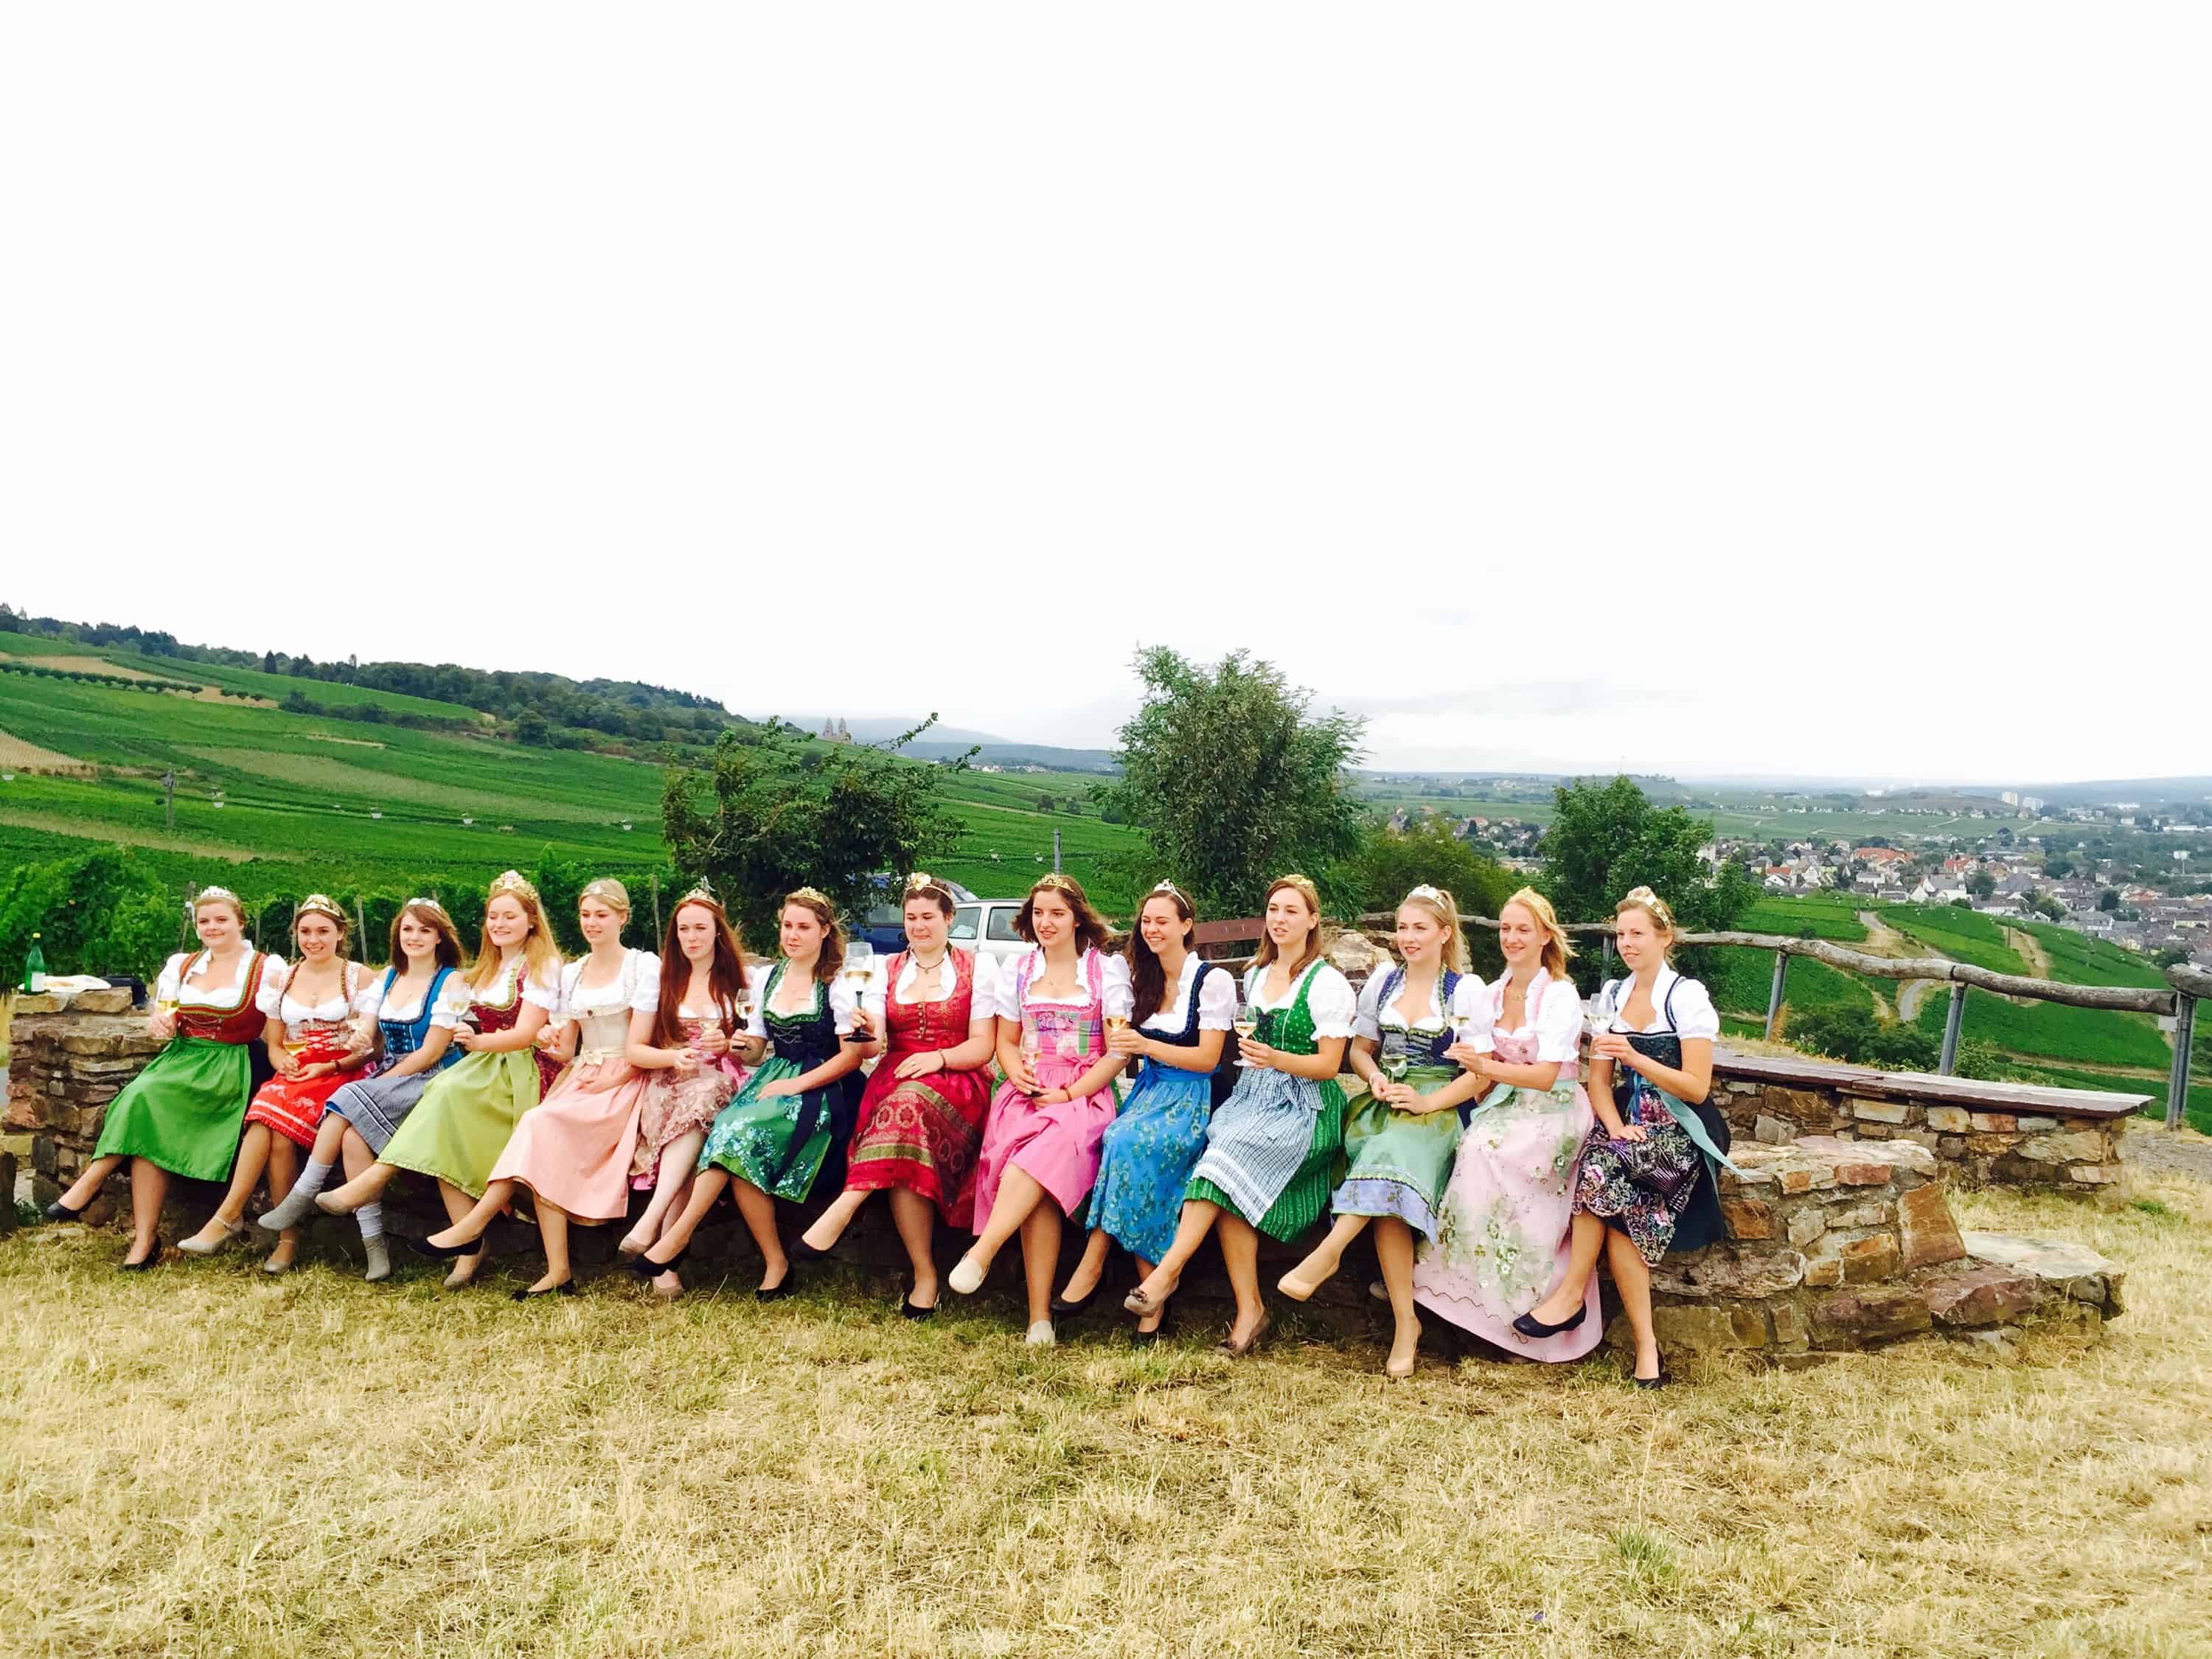 rheingau wine queens, rheingau festival, rhine festivals, rudesheim wine festival